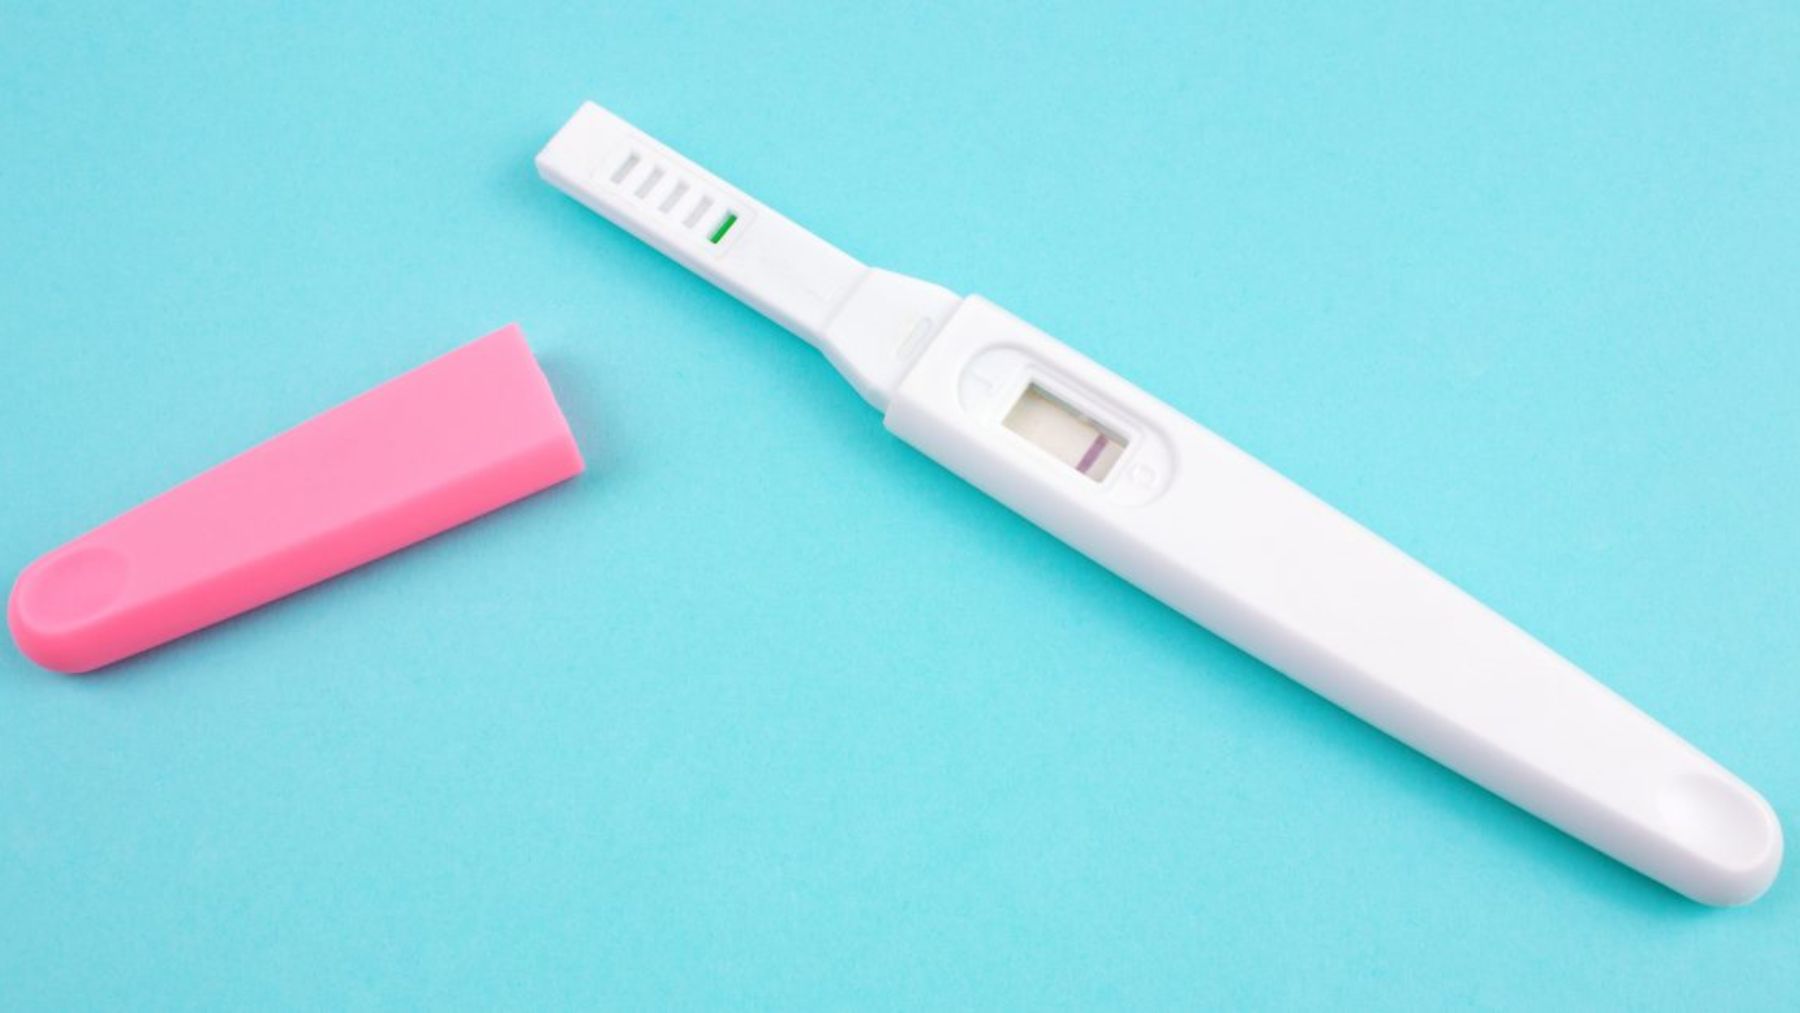 Línea tenue en la prueba de embarazo: Qué significa y por qué aparece